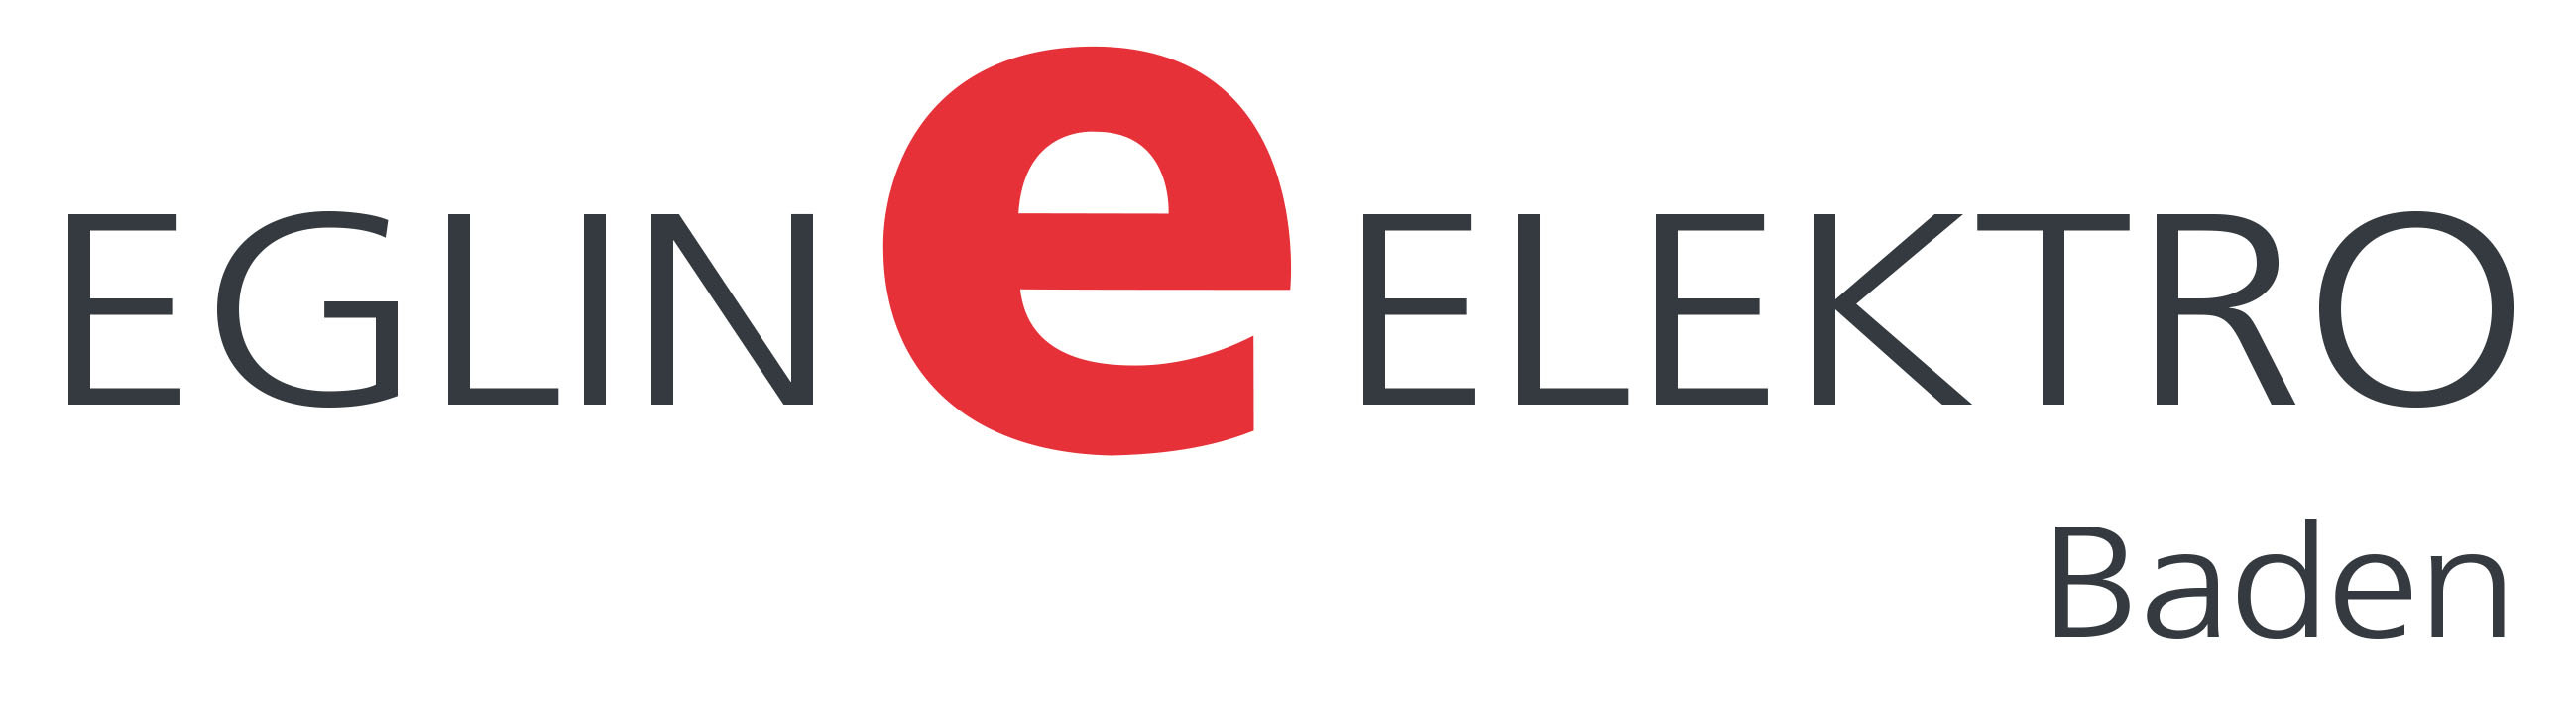 Eglin Elektro AG